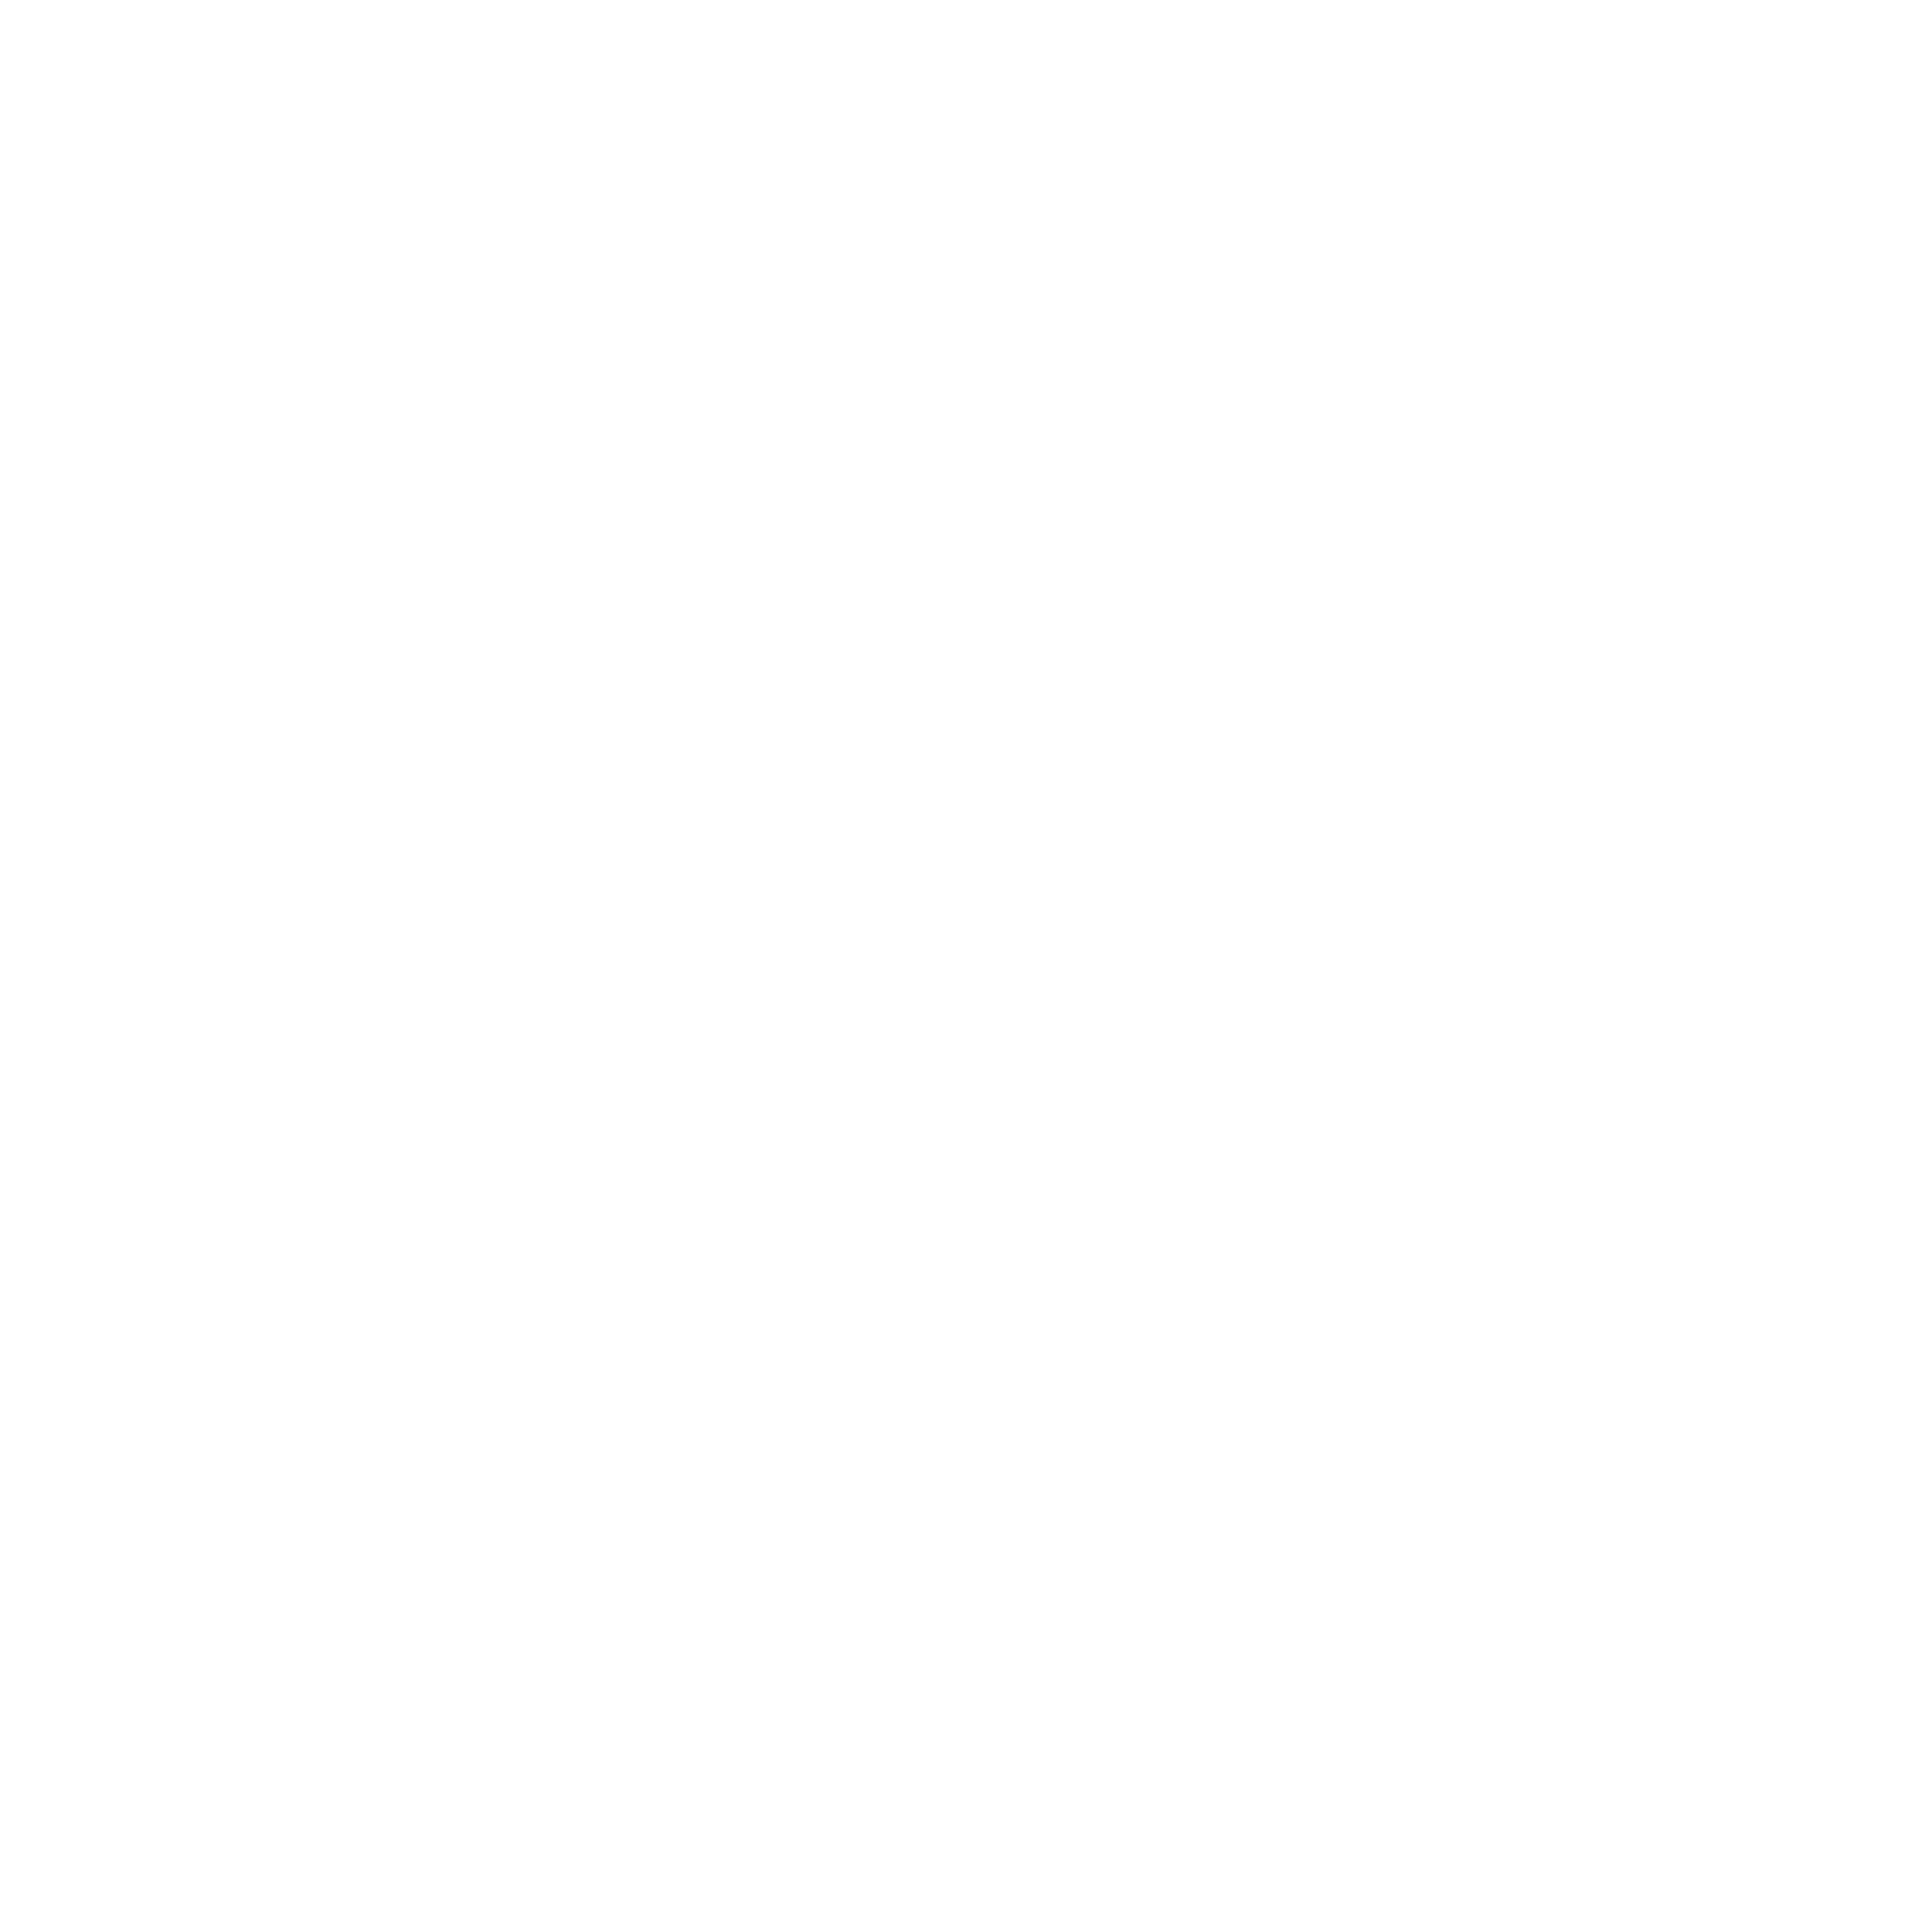 Vila Nora